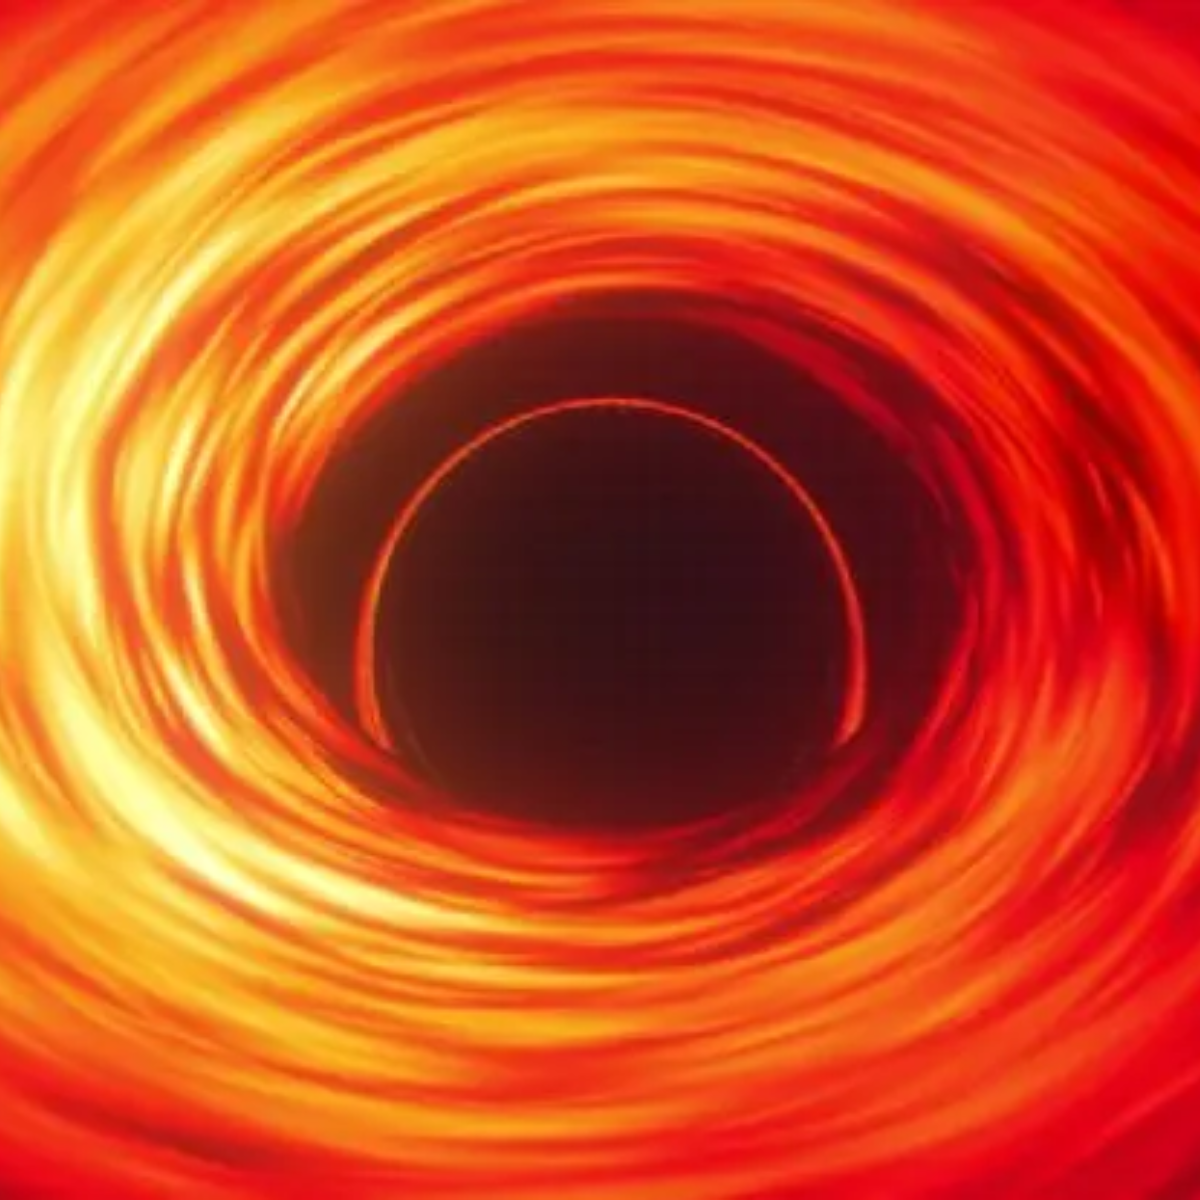  buraco negro da galáxia J0529-4351 